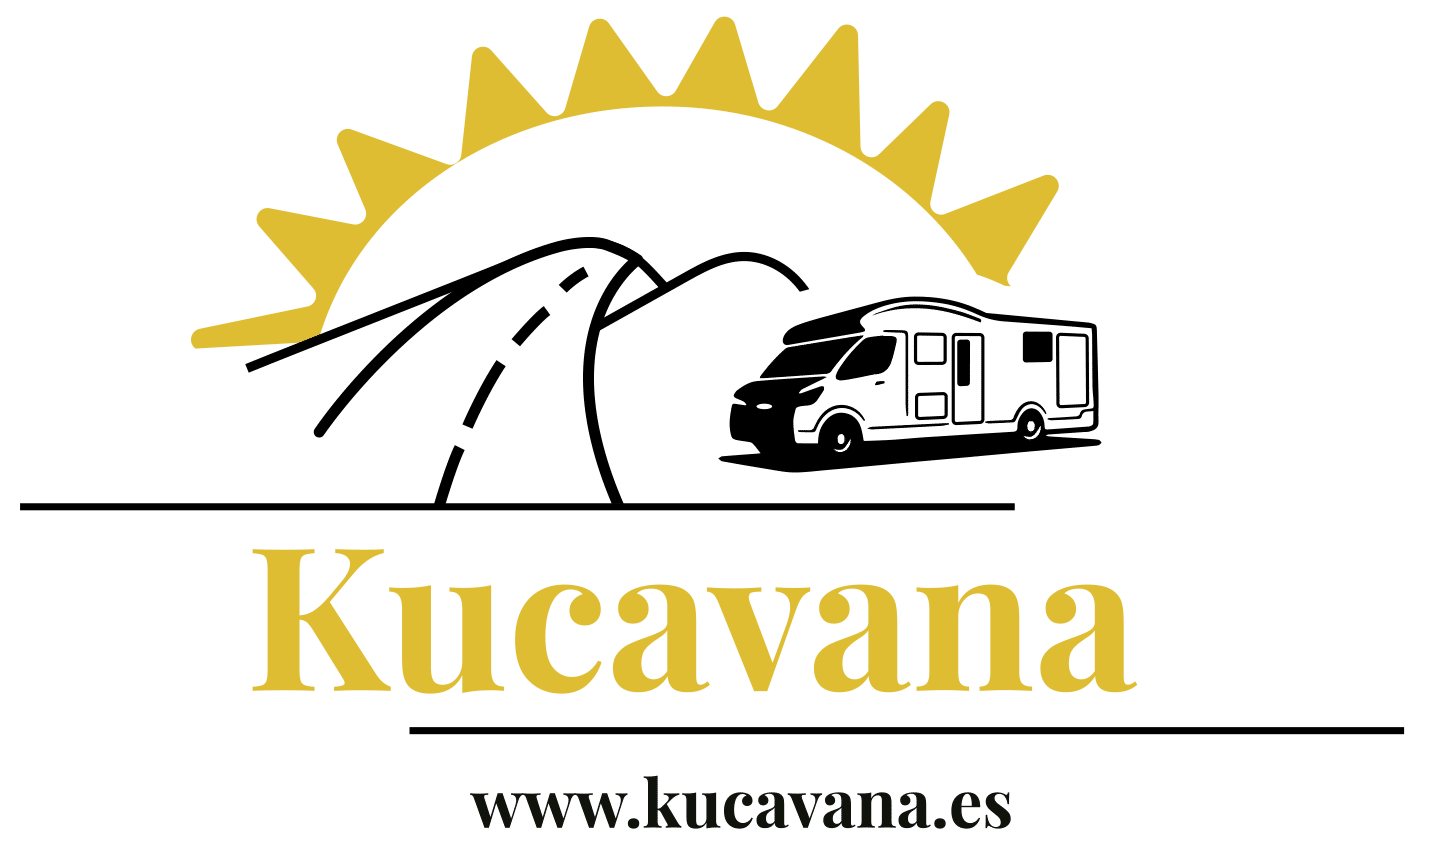 Kucavana - Voyage en camping-car